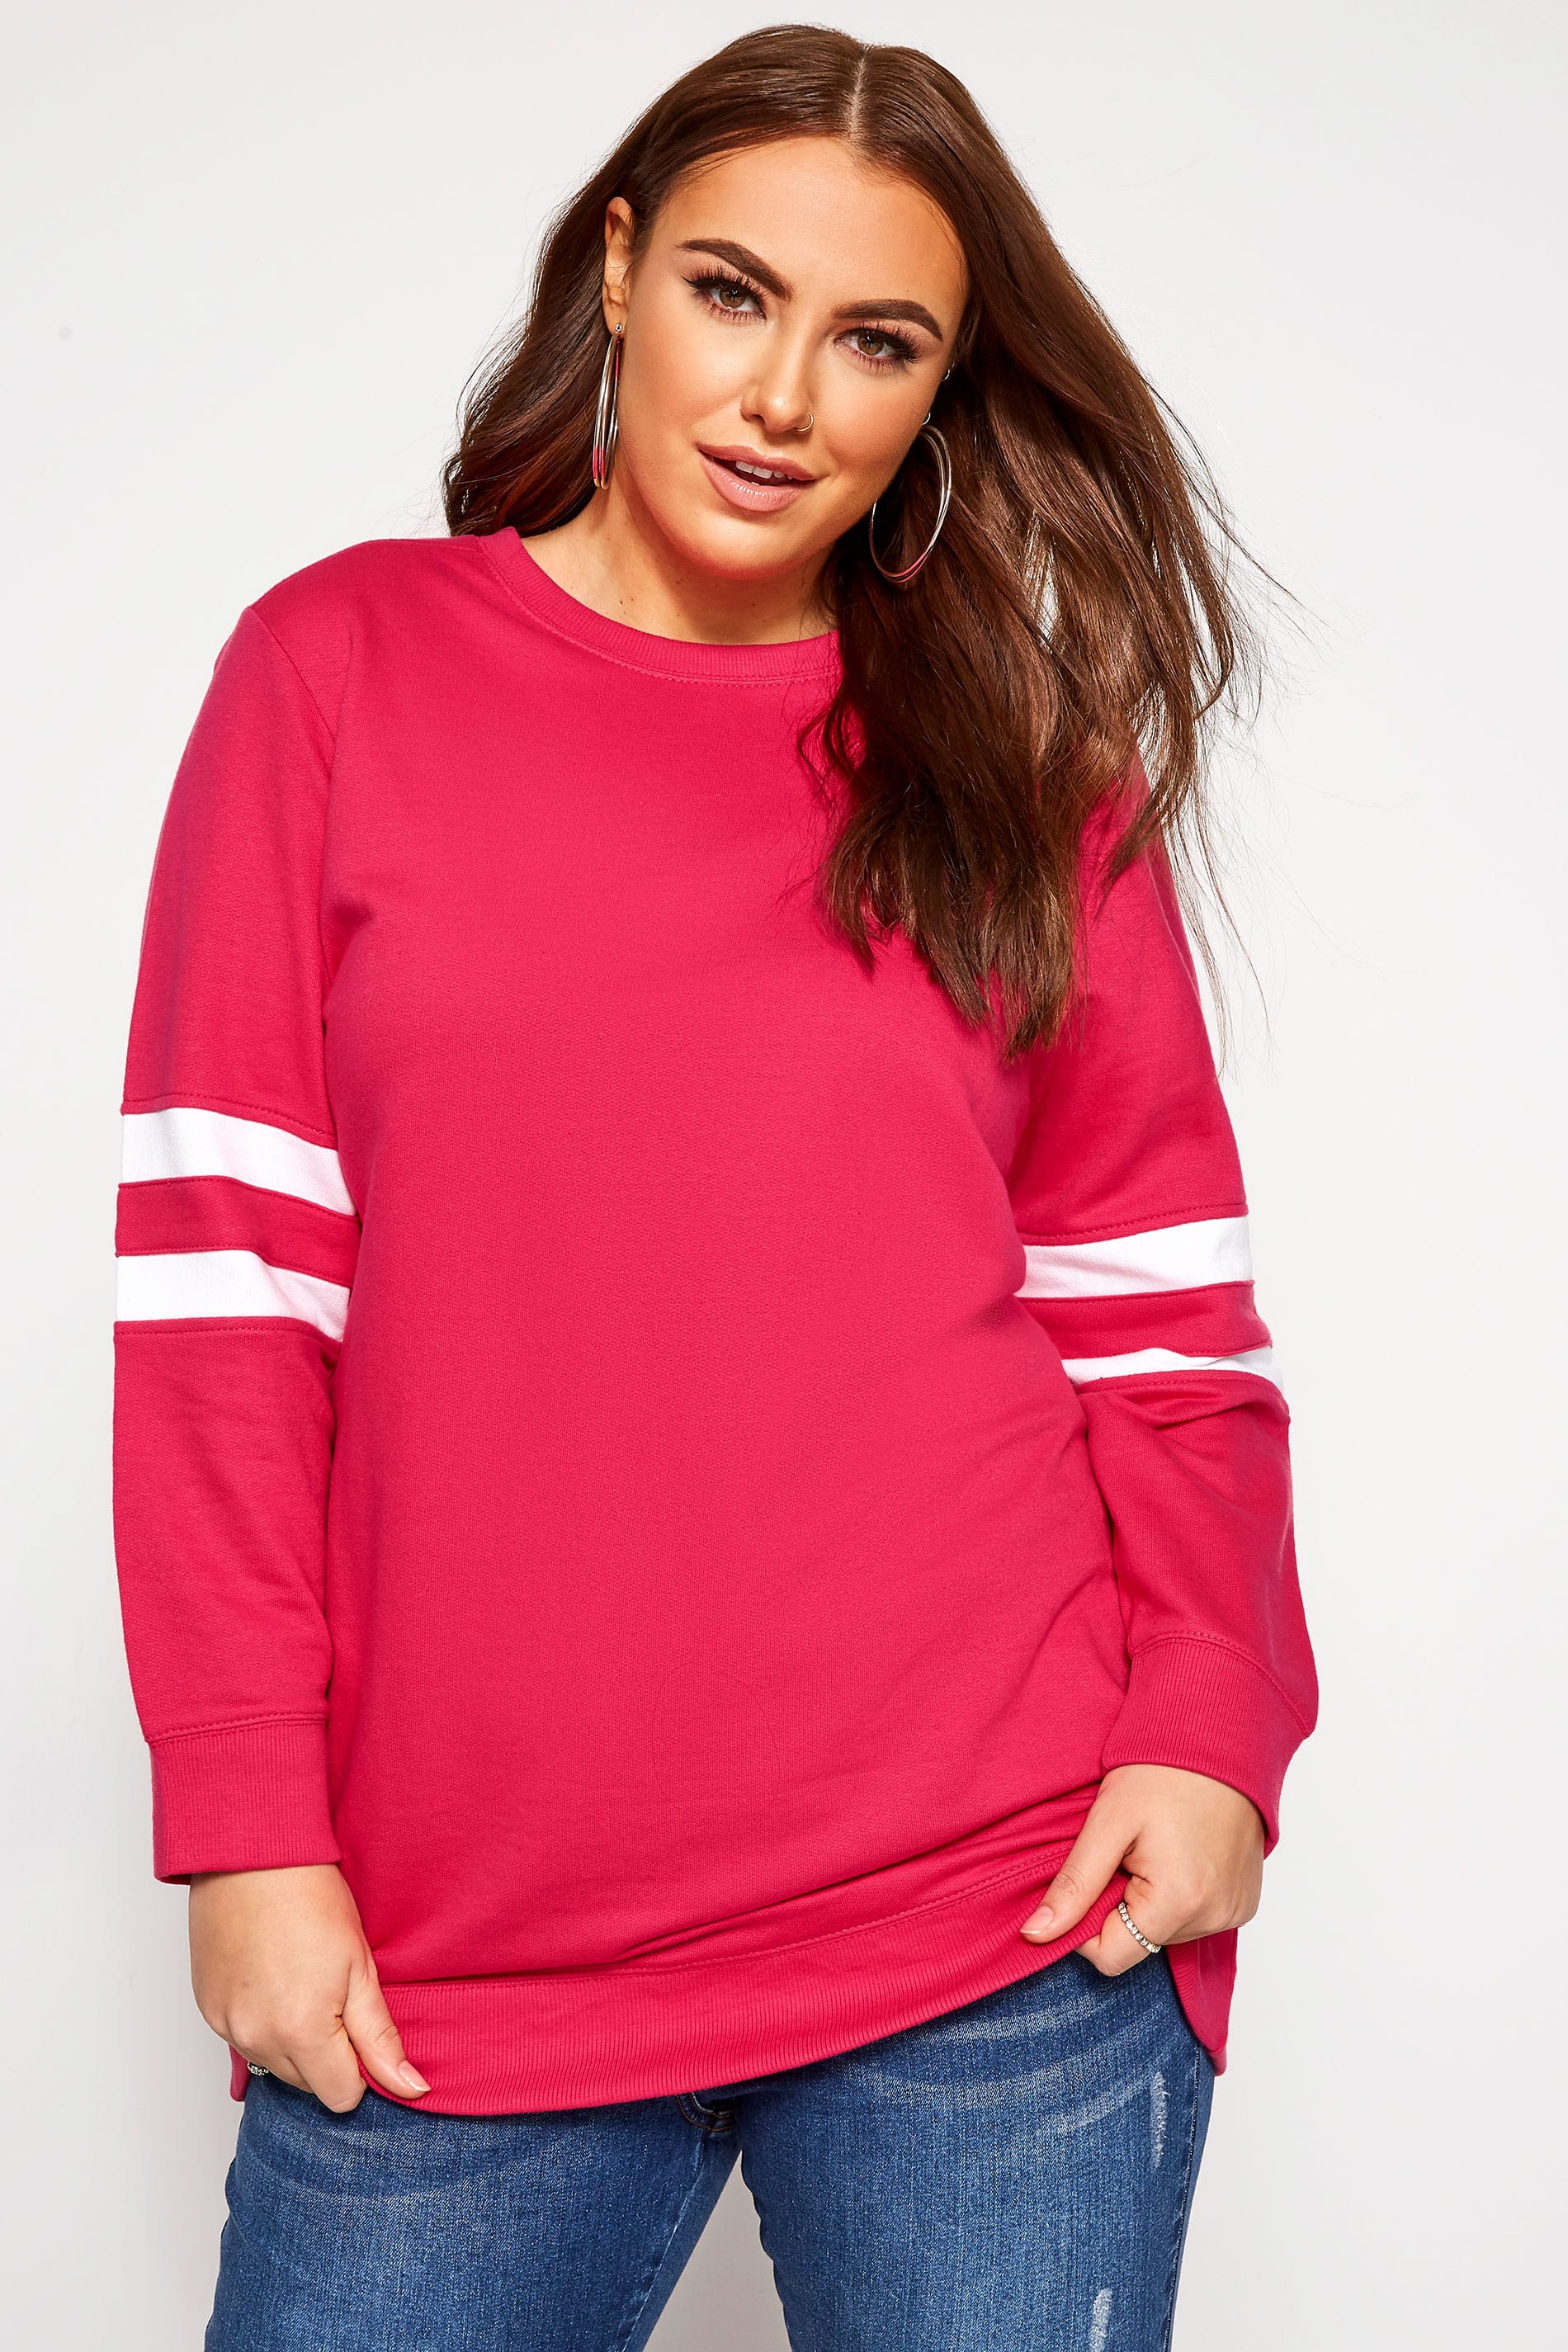 bright pink sweatshirt